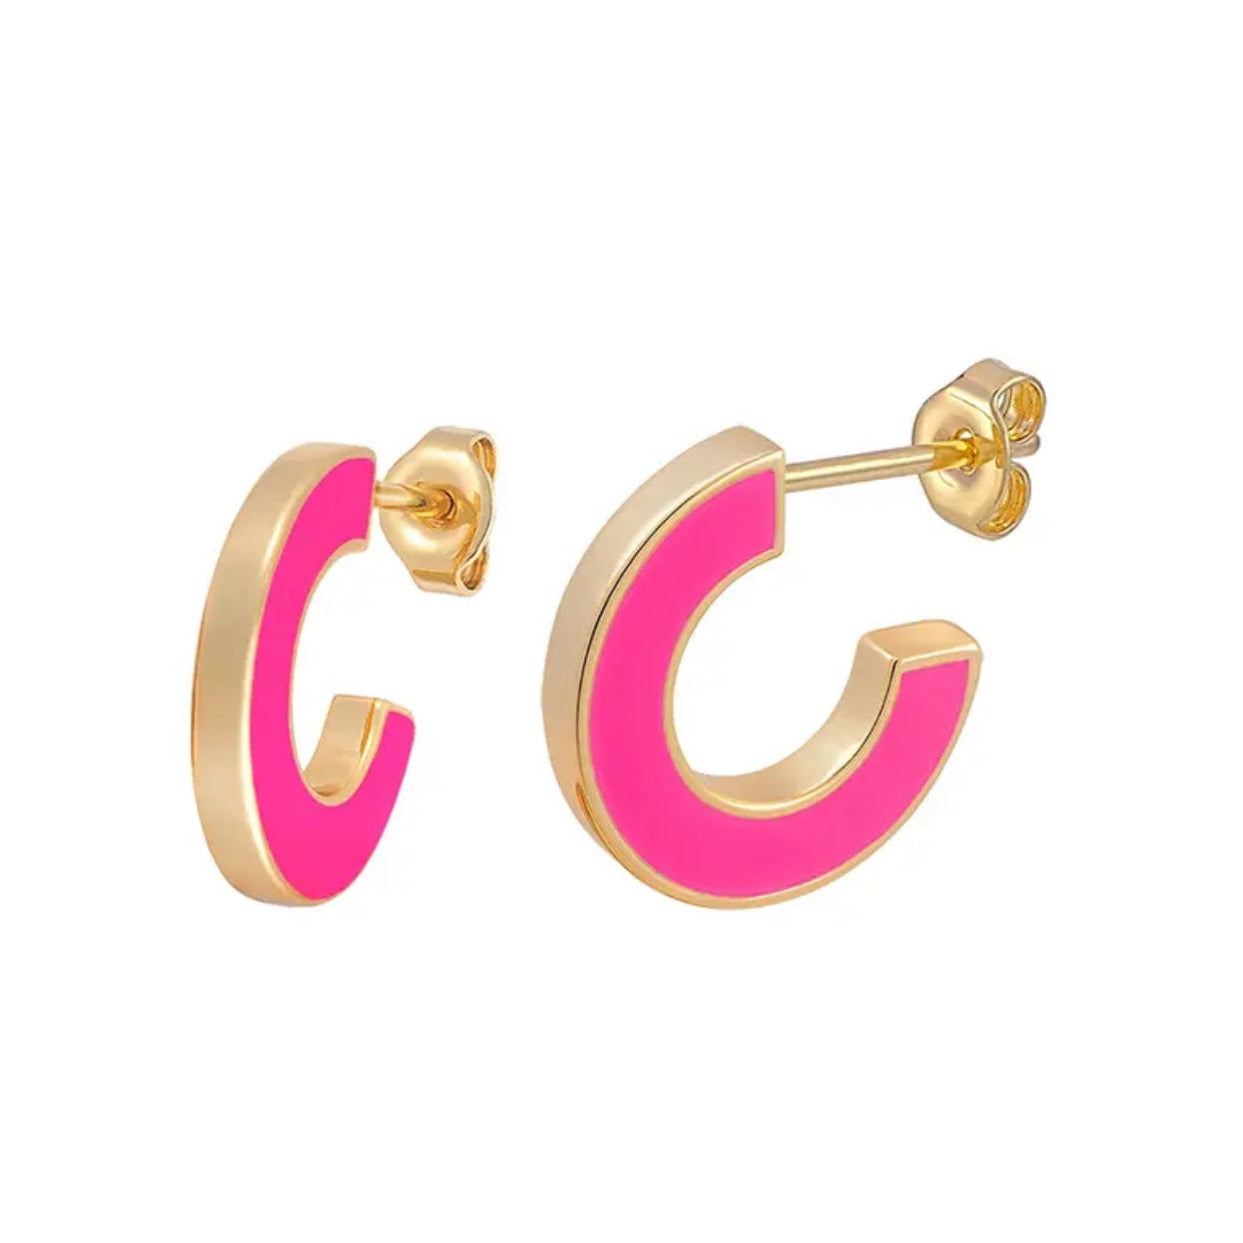 Neon pink enamel hoop earrings